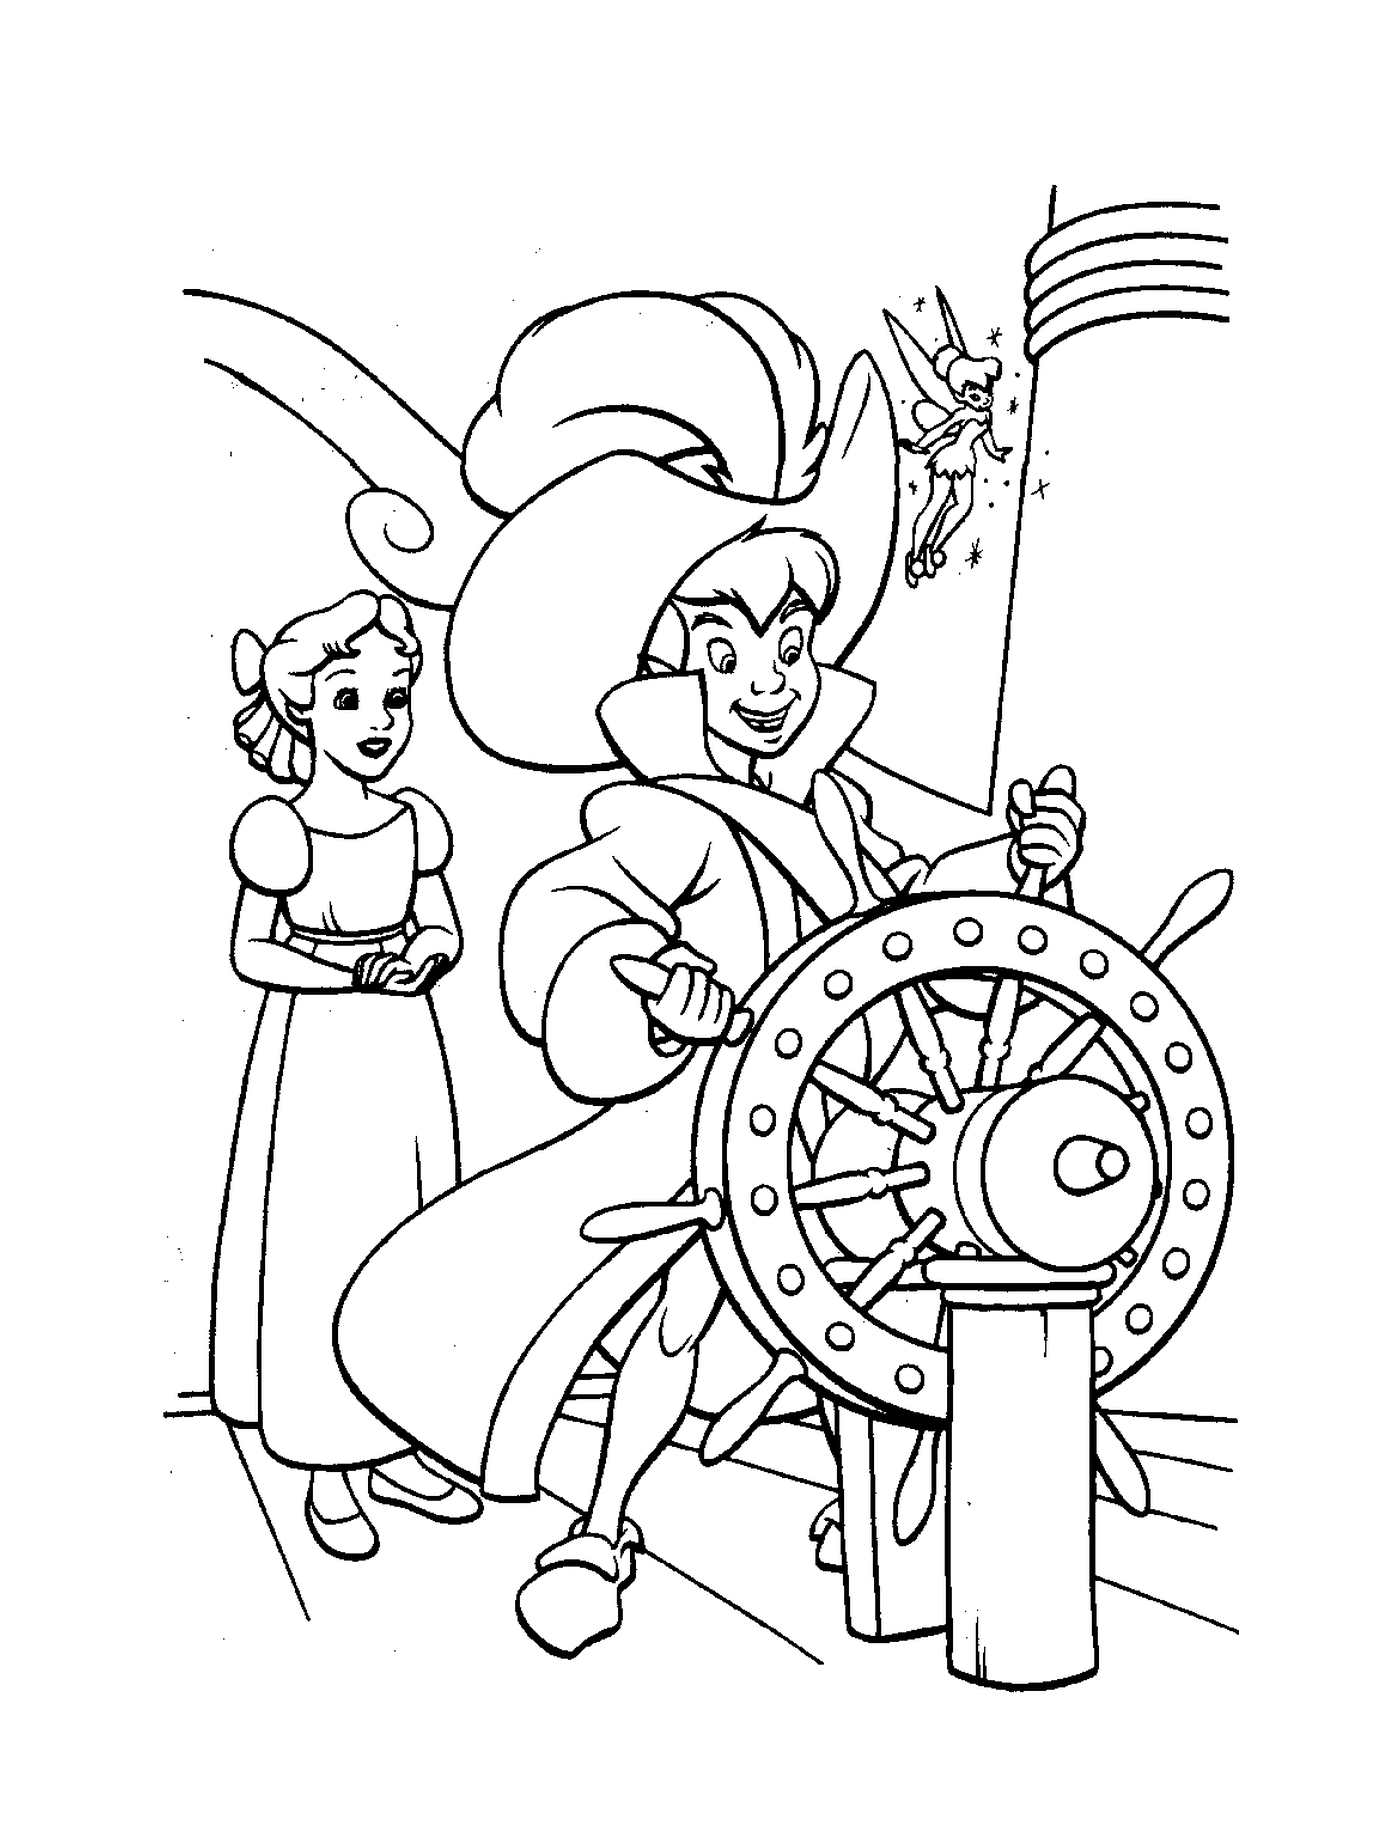   Peter Pan aux commandes du bateau pirate 